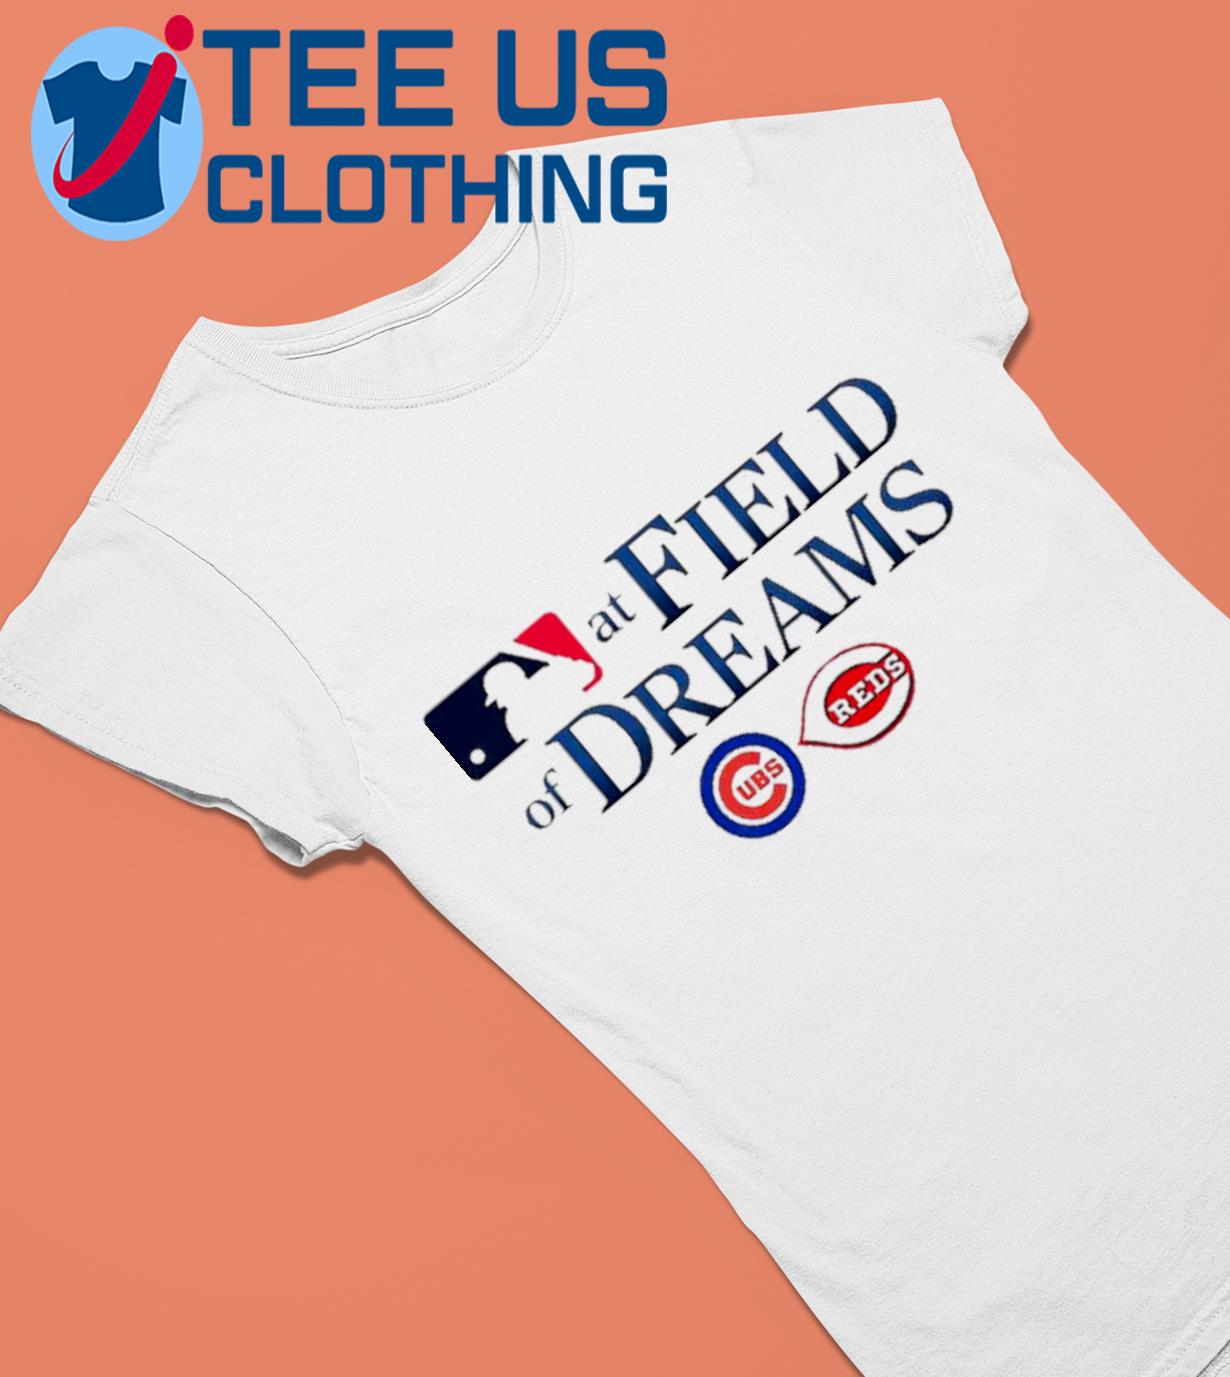 Chicago Cubs vs Cincinnati Reds 2022 field of dreams shirt, hoodie